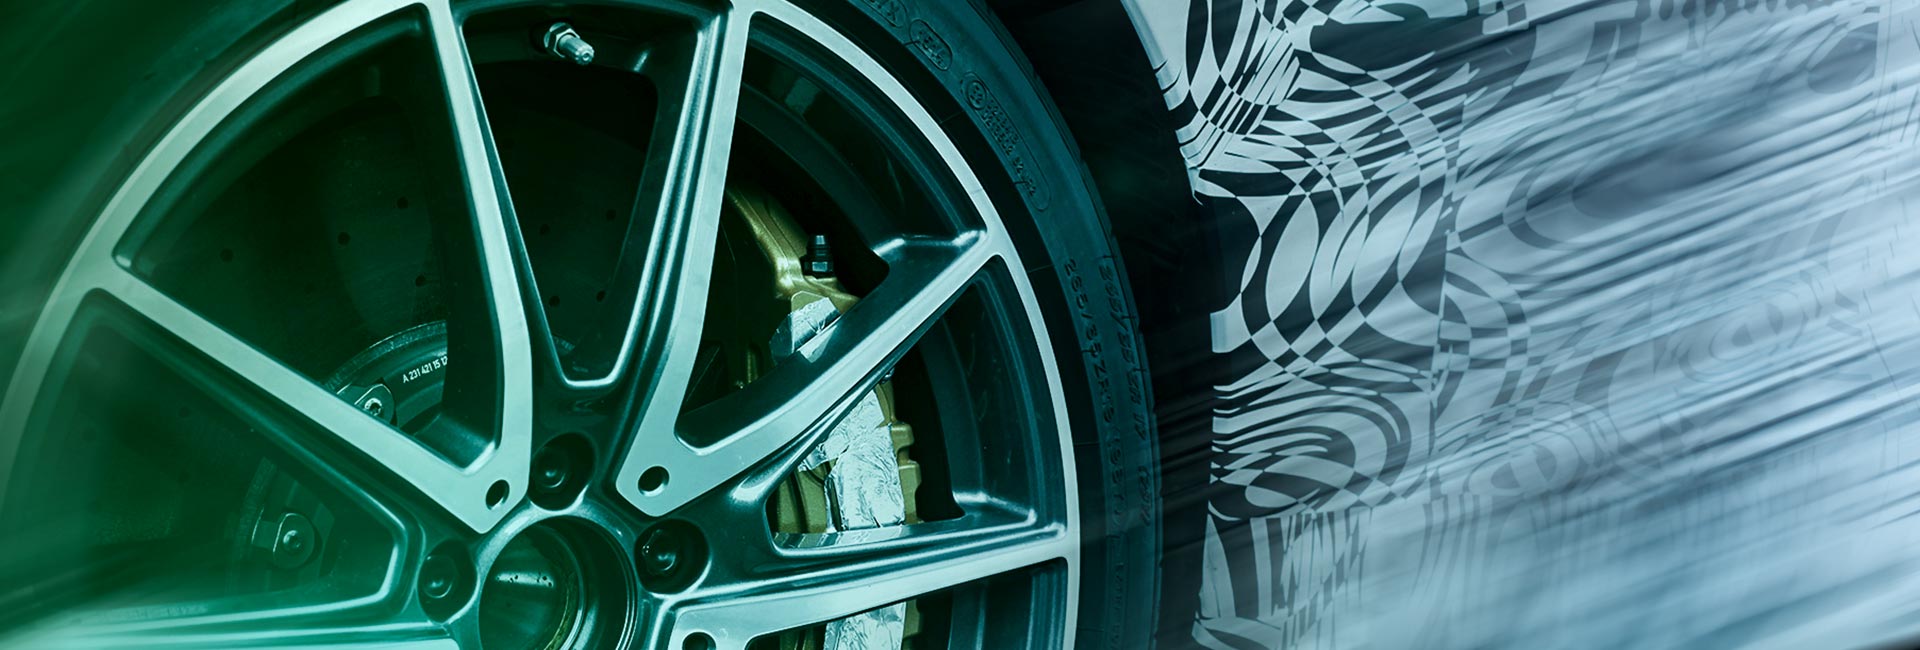 Formel D exploite des centres de test de véhicules afin de fournir des solutions économiquement viables aux constructeurs automobiles pour les essais de véhicules.